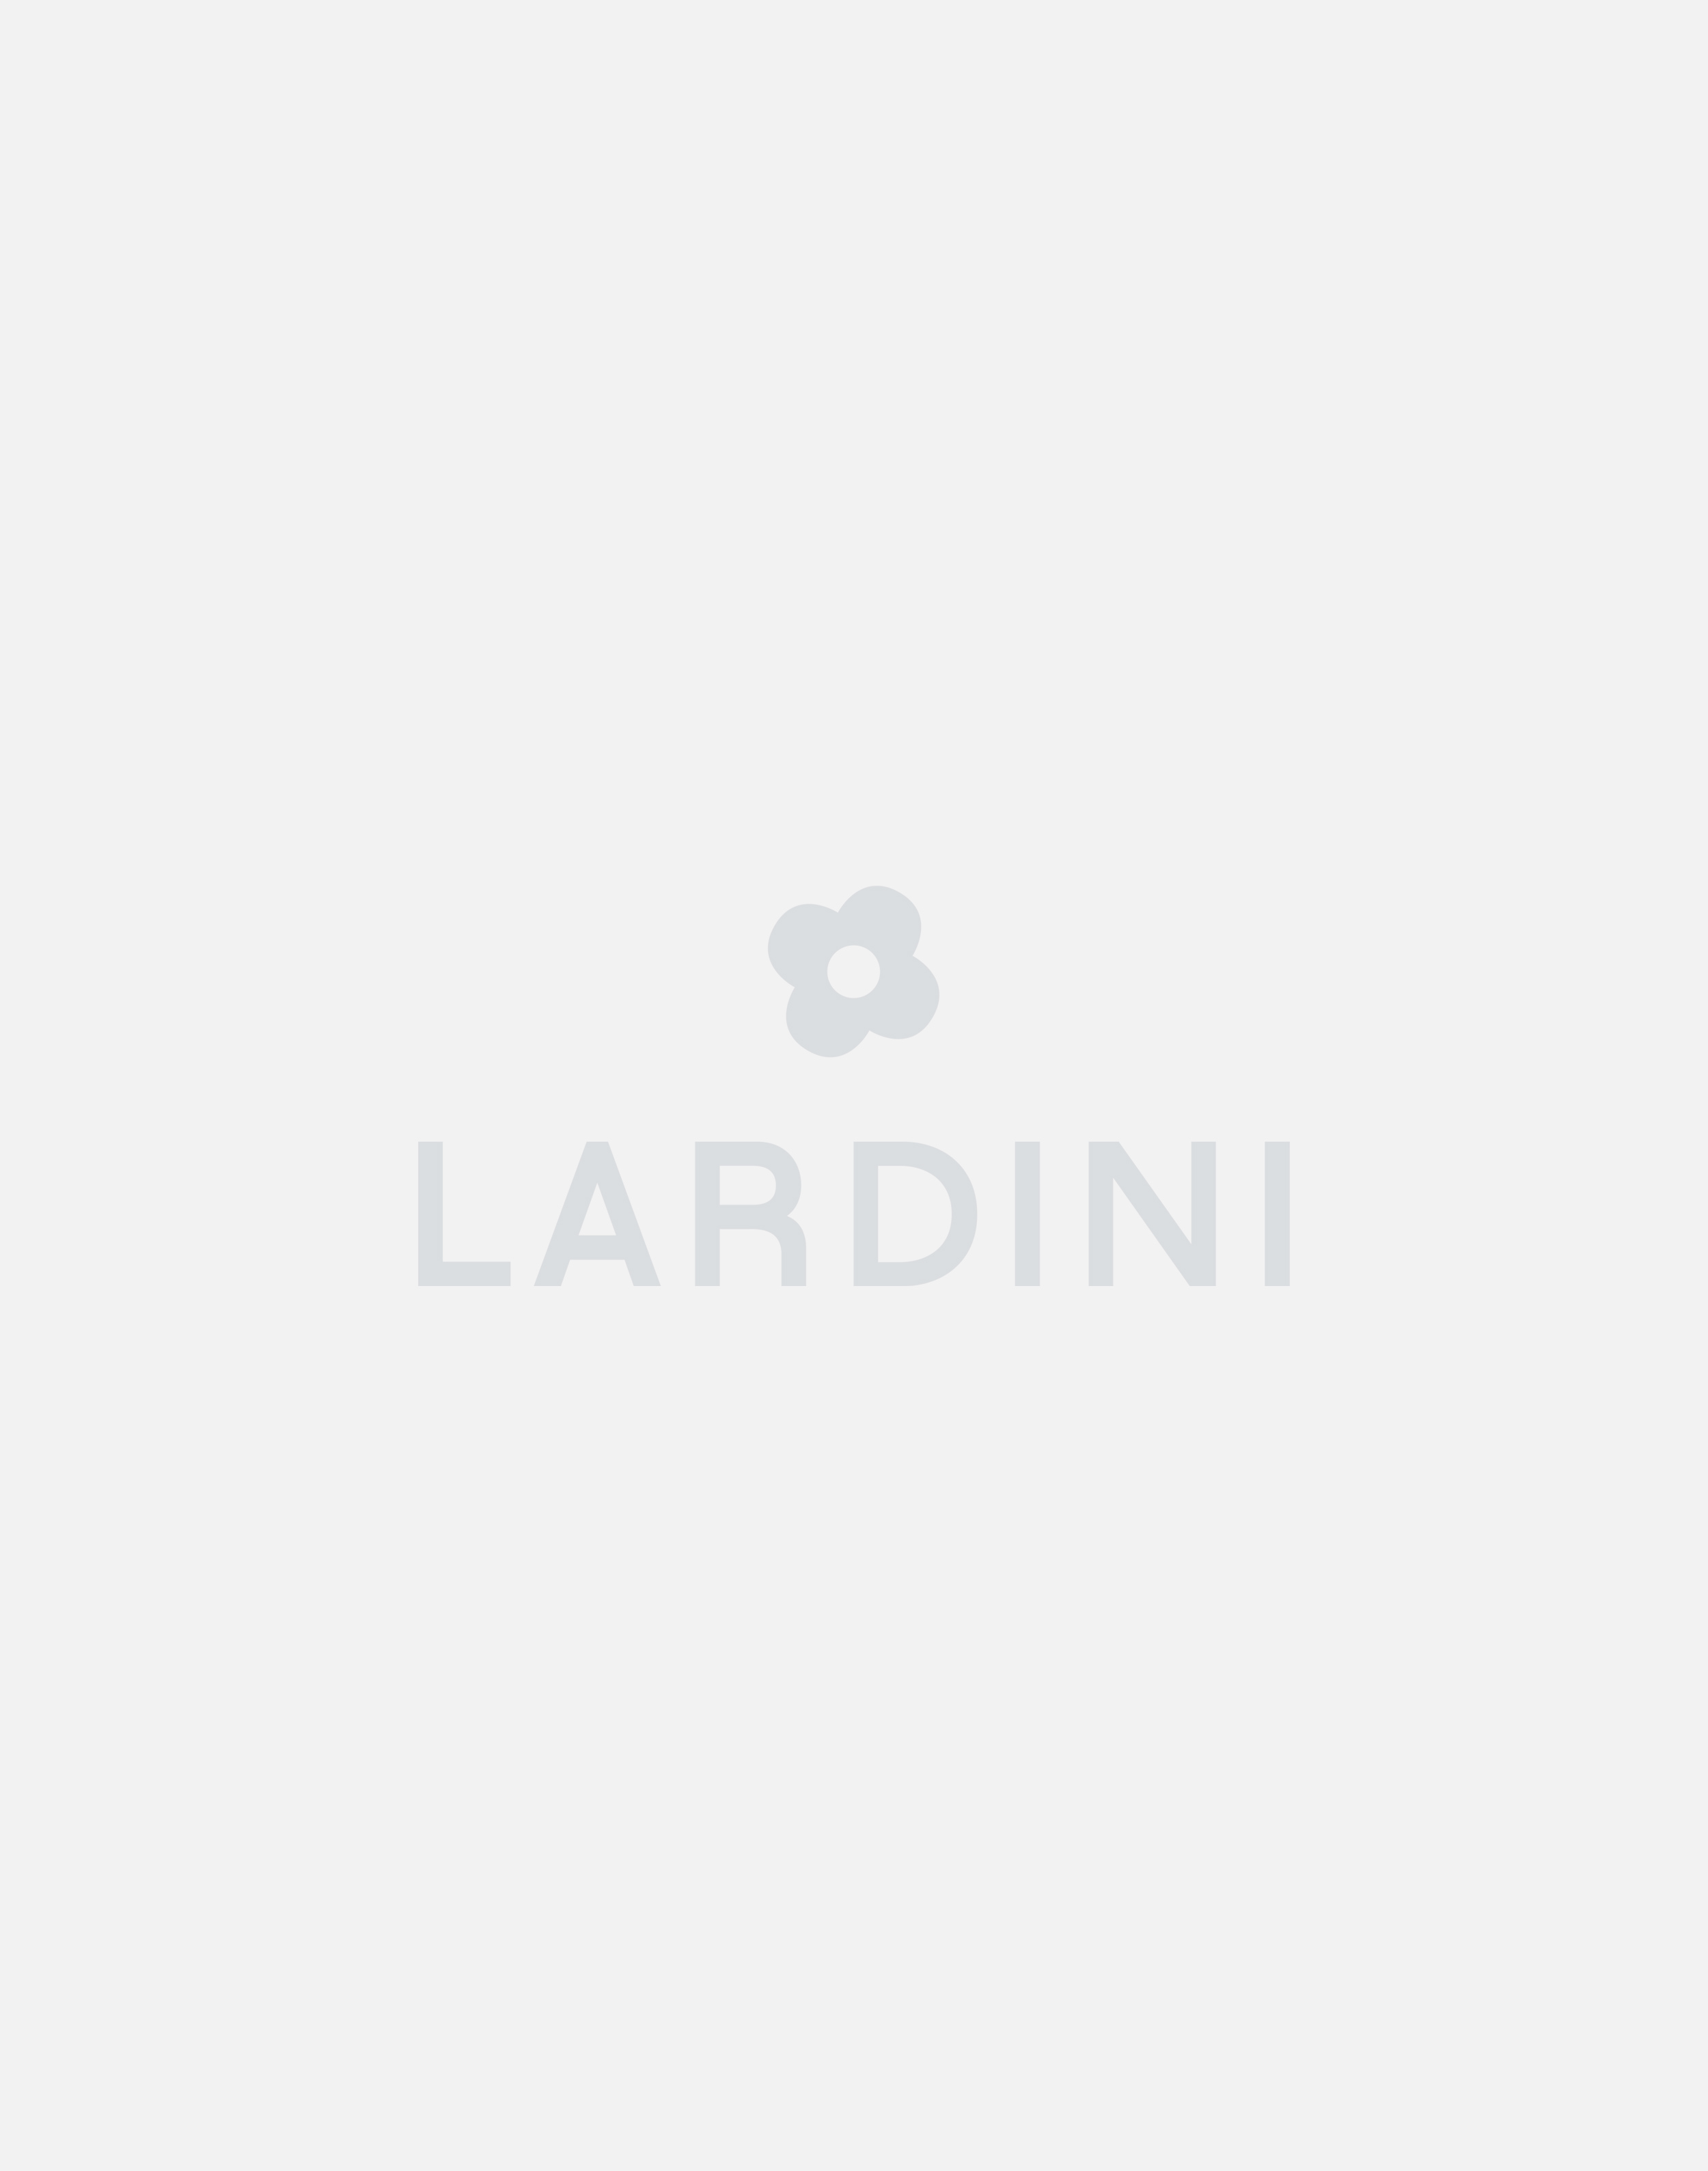 Cream trousers - Luigi Lardini capsule